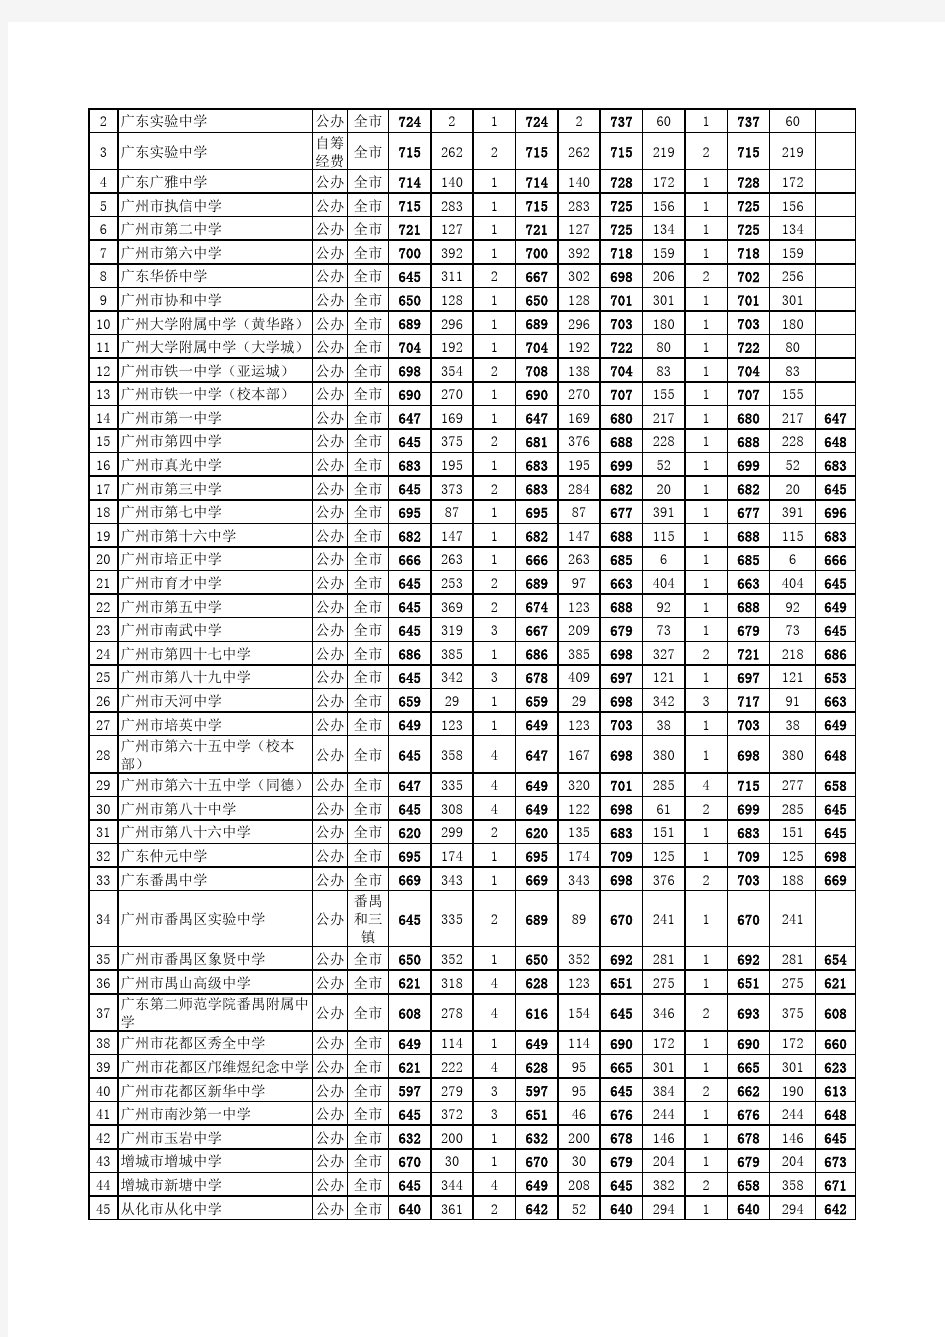 (2014年广州中考高中各批次录取分数线)